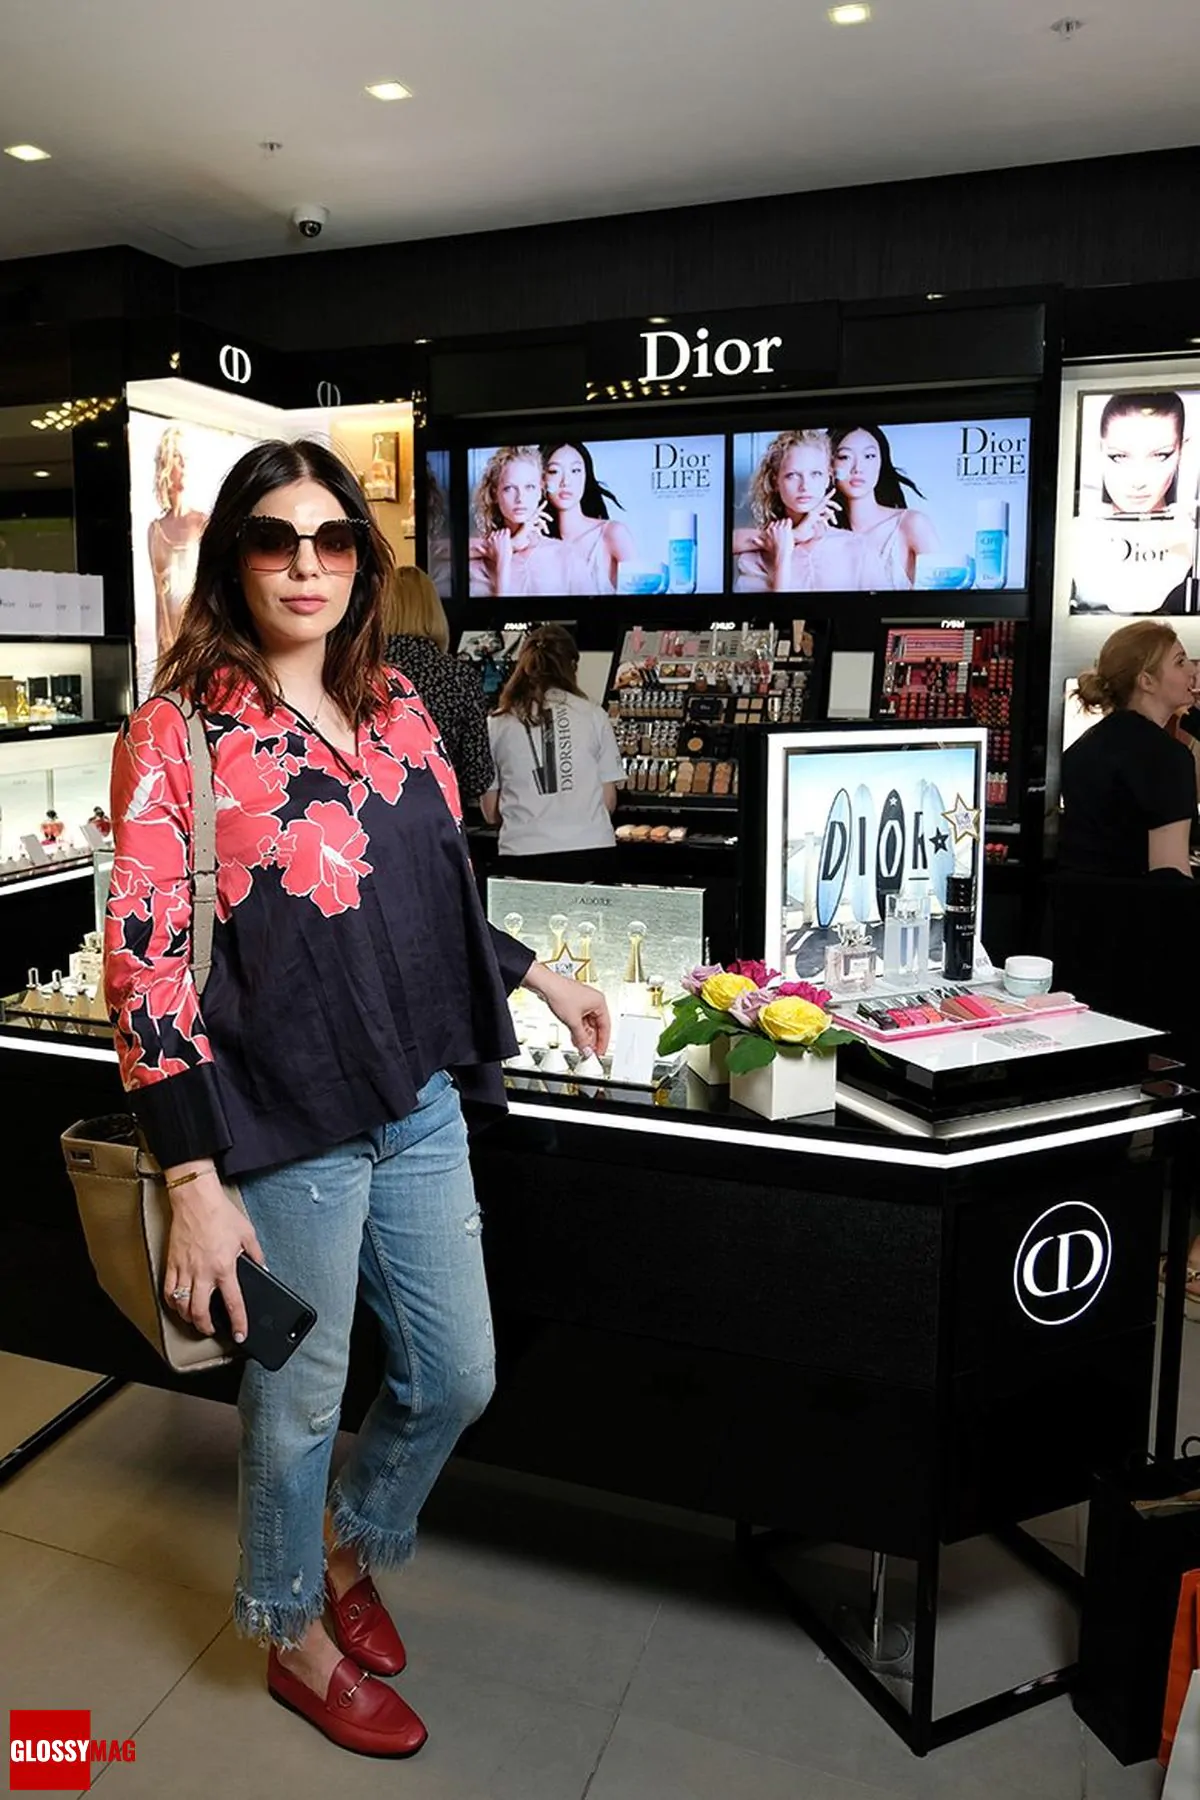 Анастасия Стоцкая в корнере Dior на закрытом мероприятии Beauty CHOICE в Rivoli Perfumery в ТГ Модный сезон, 28 июня 2017 г.